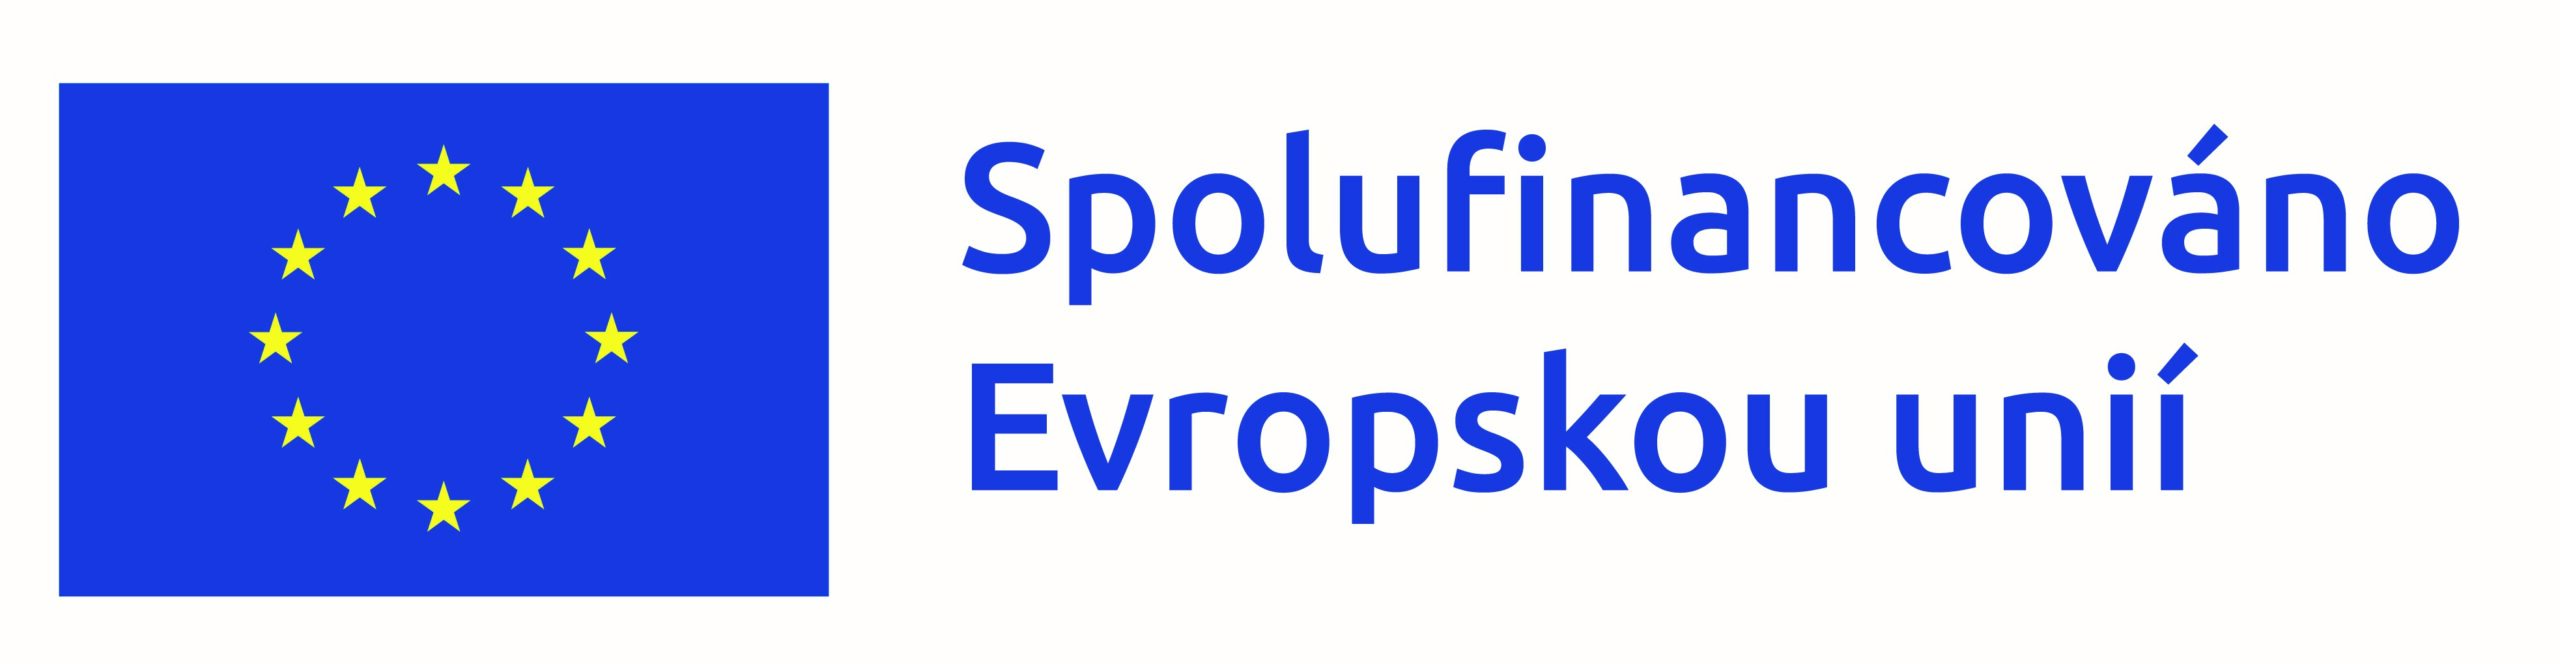 logo EU + NPO + MPSV